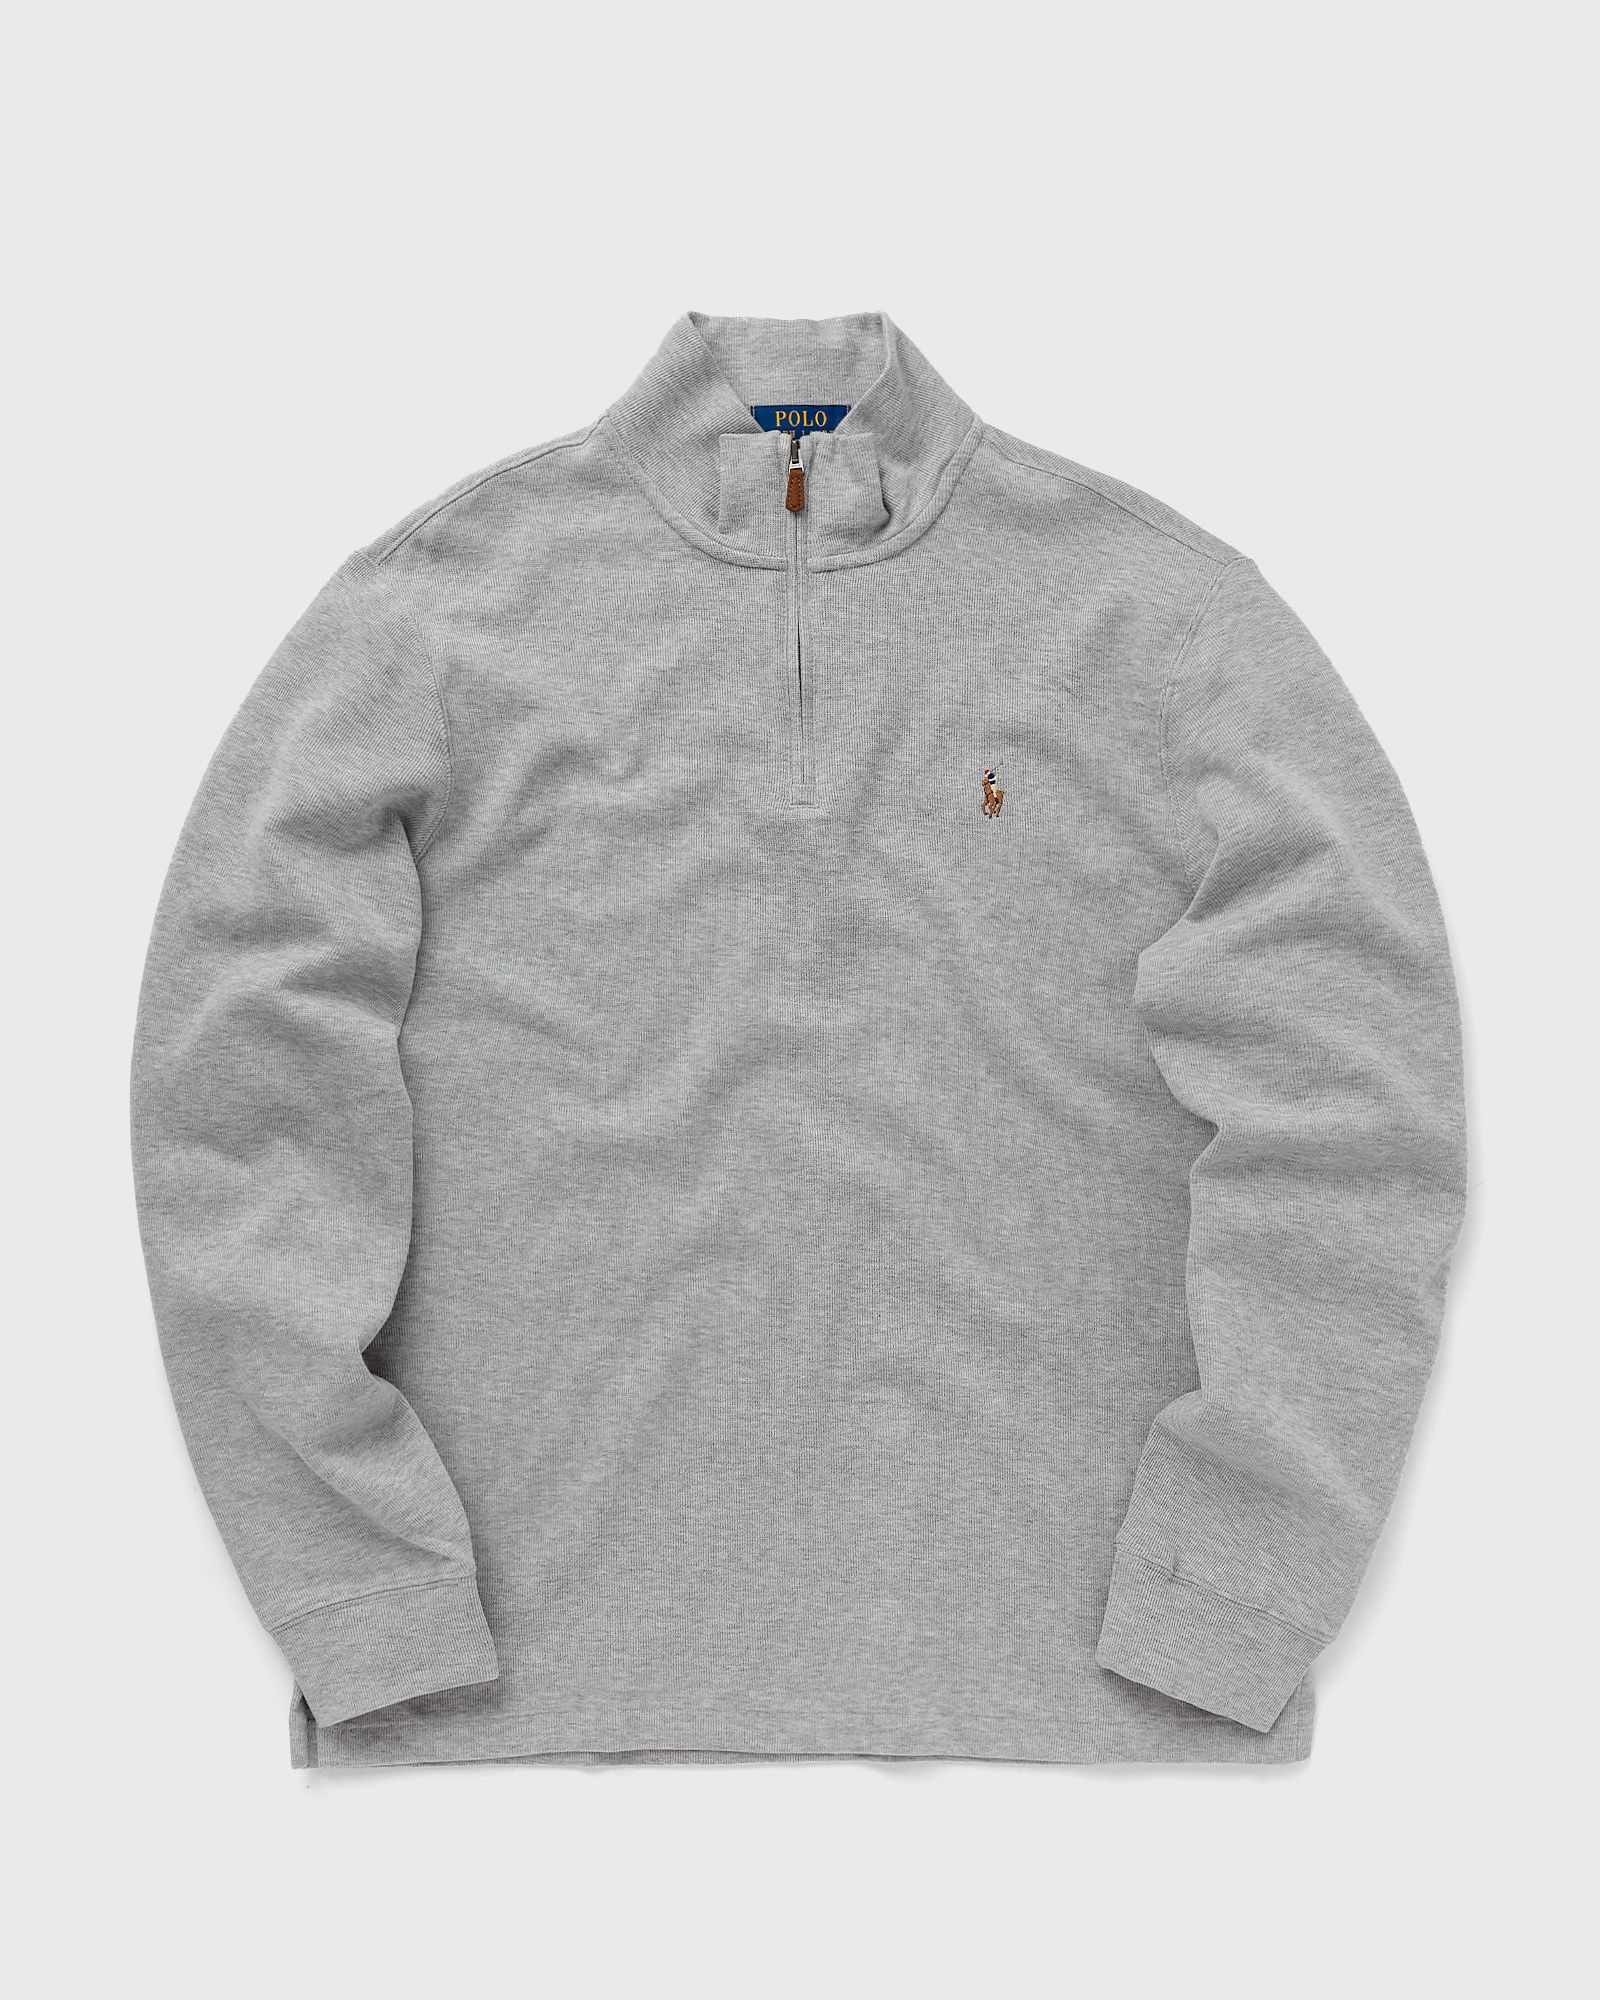 Polo Ralph Lauren - long sleeve-knit men pullovers grey in größe:xl